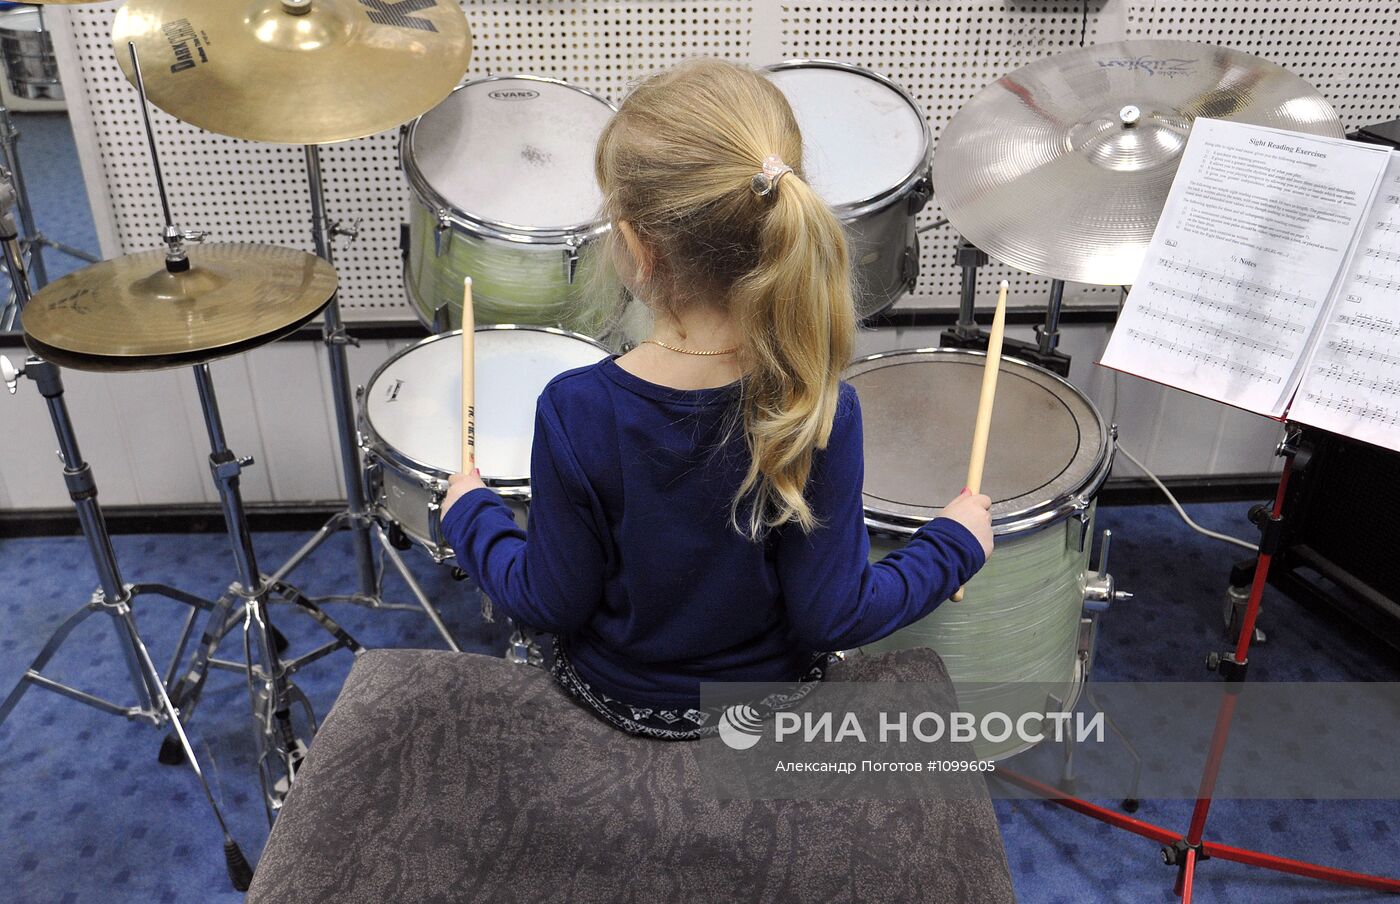 Работа детского центра джазовой подготовки в Ростове-на-Дону